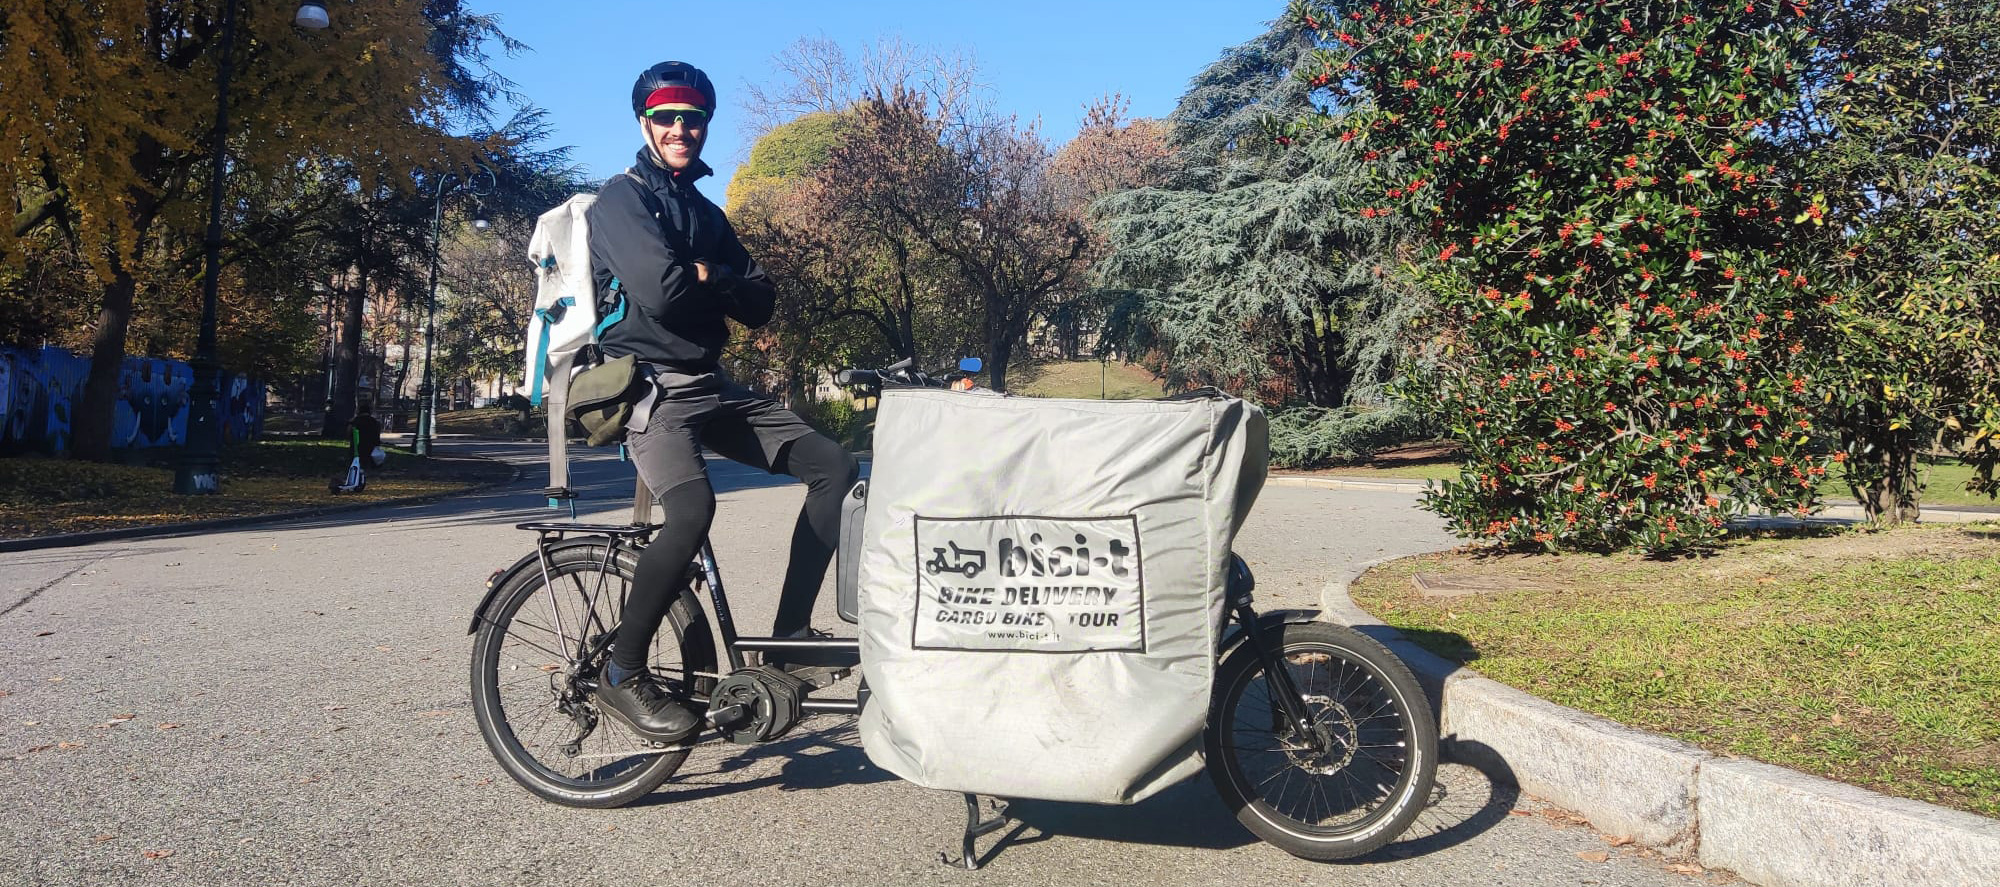 Bici-t - Consegne in cargo bike